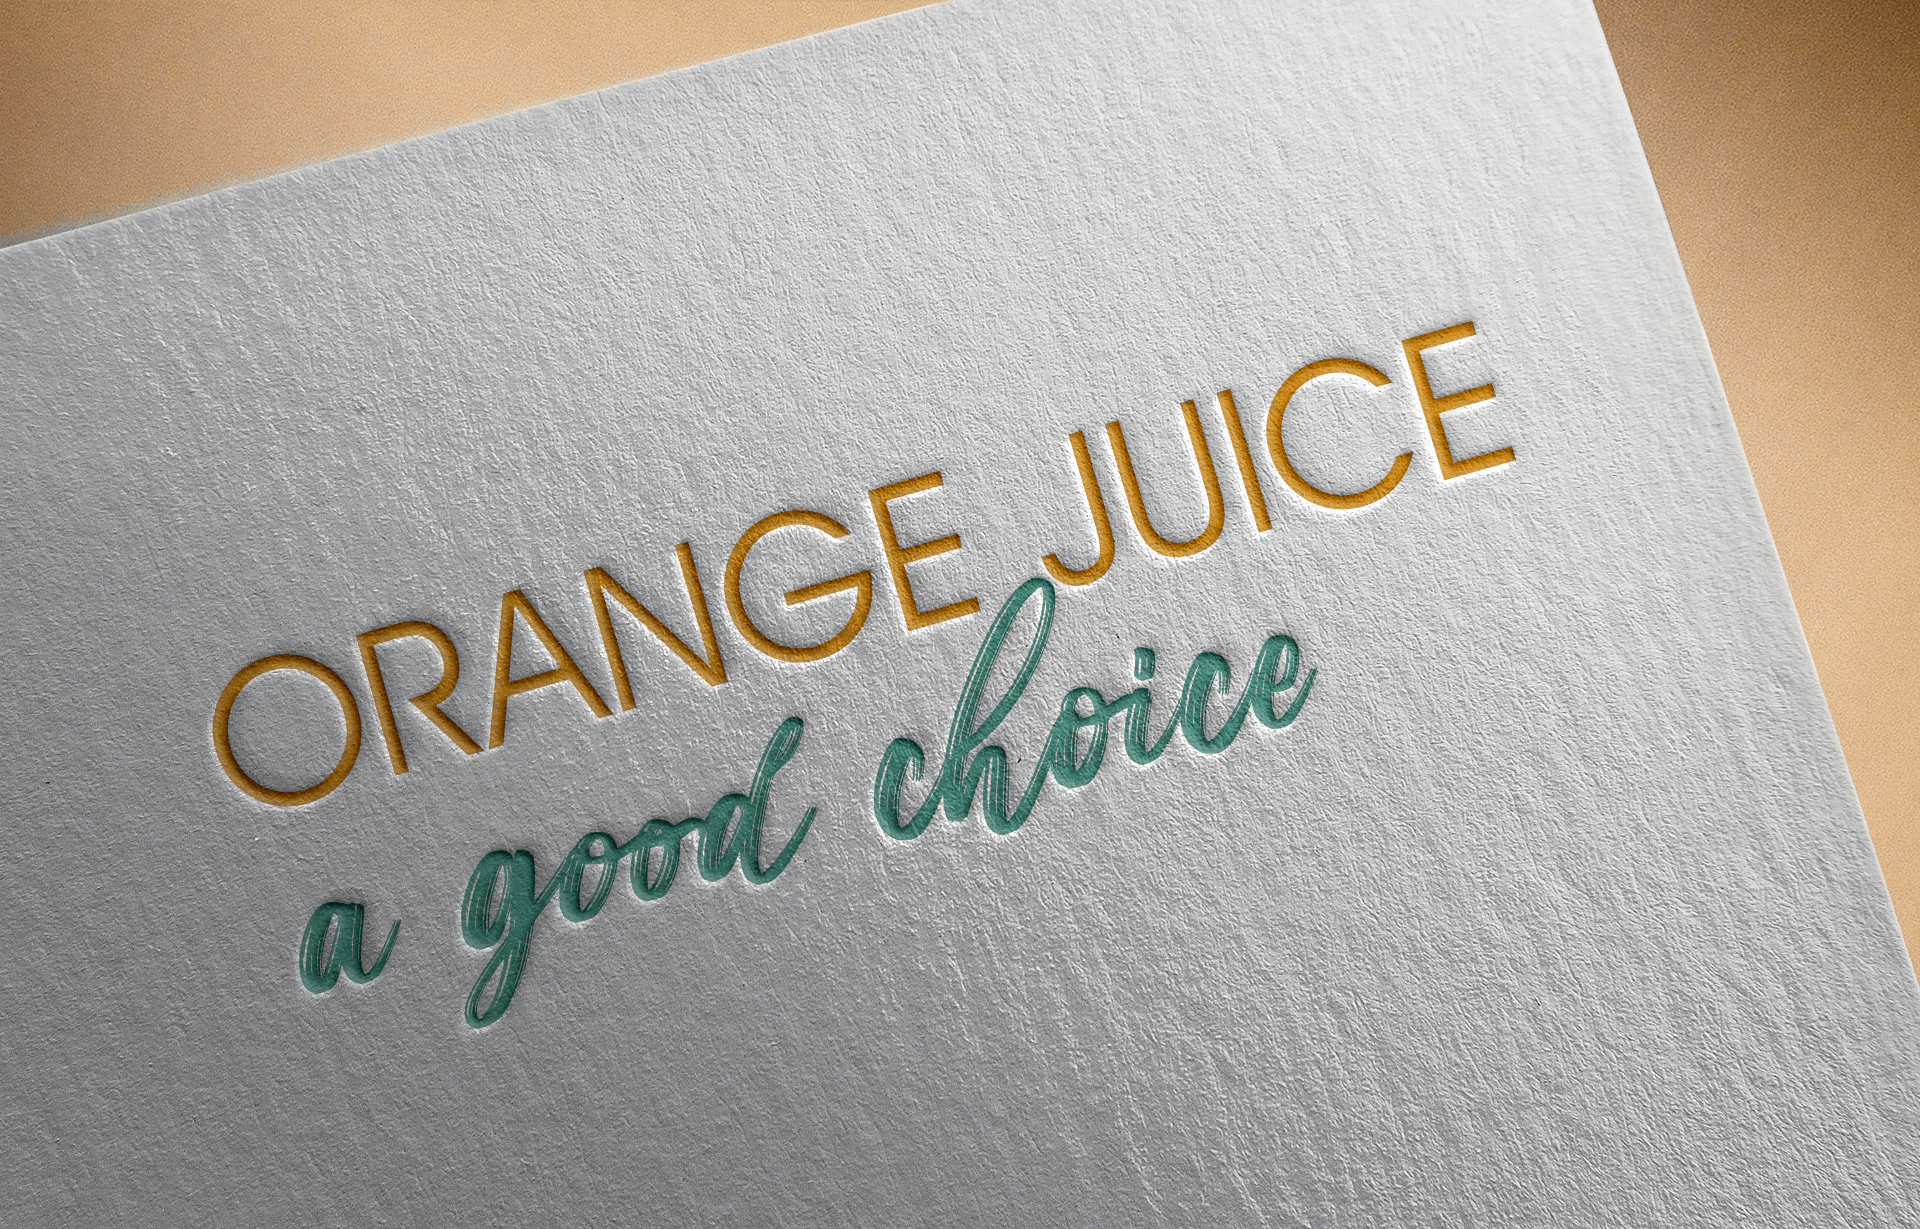 Orange Juice, a good choice  –  CitrusBR